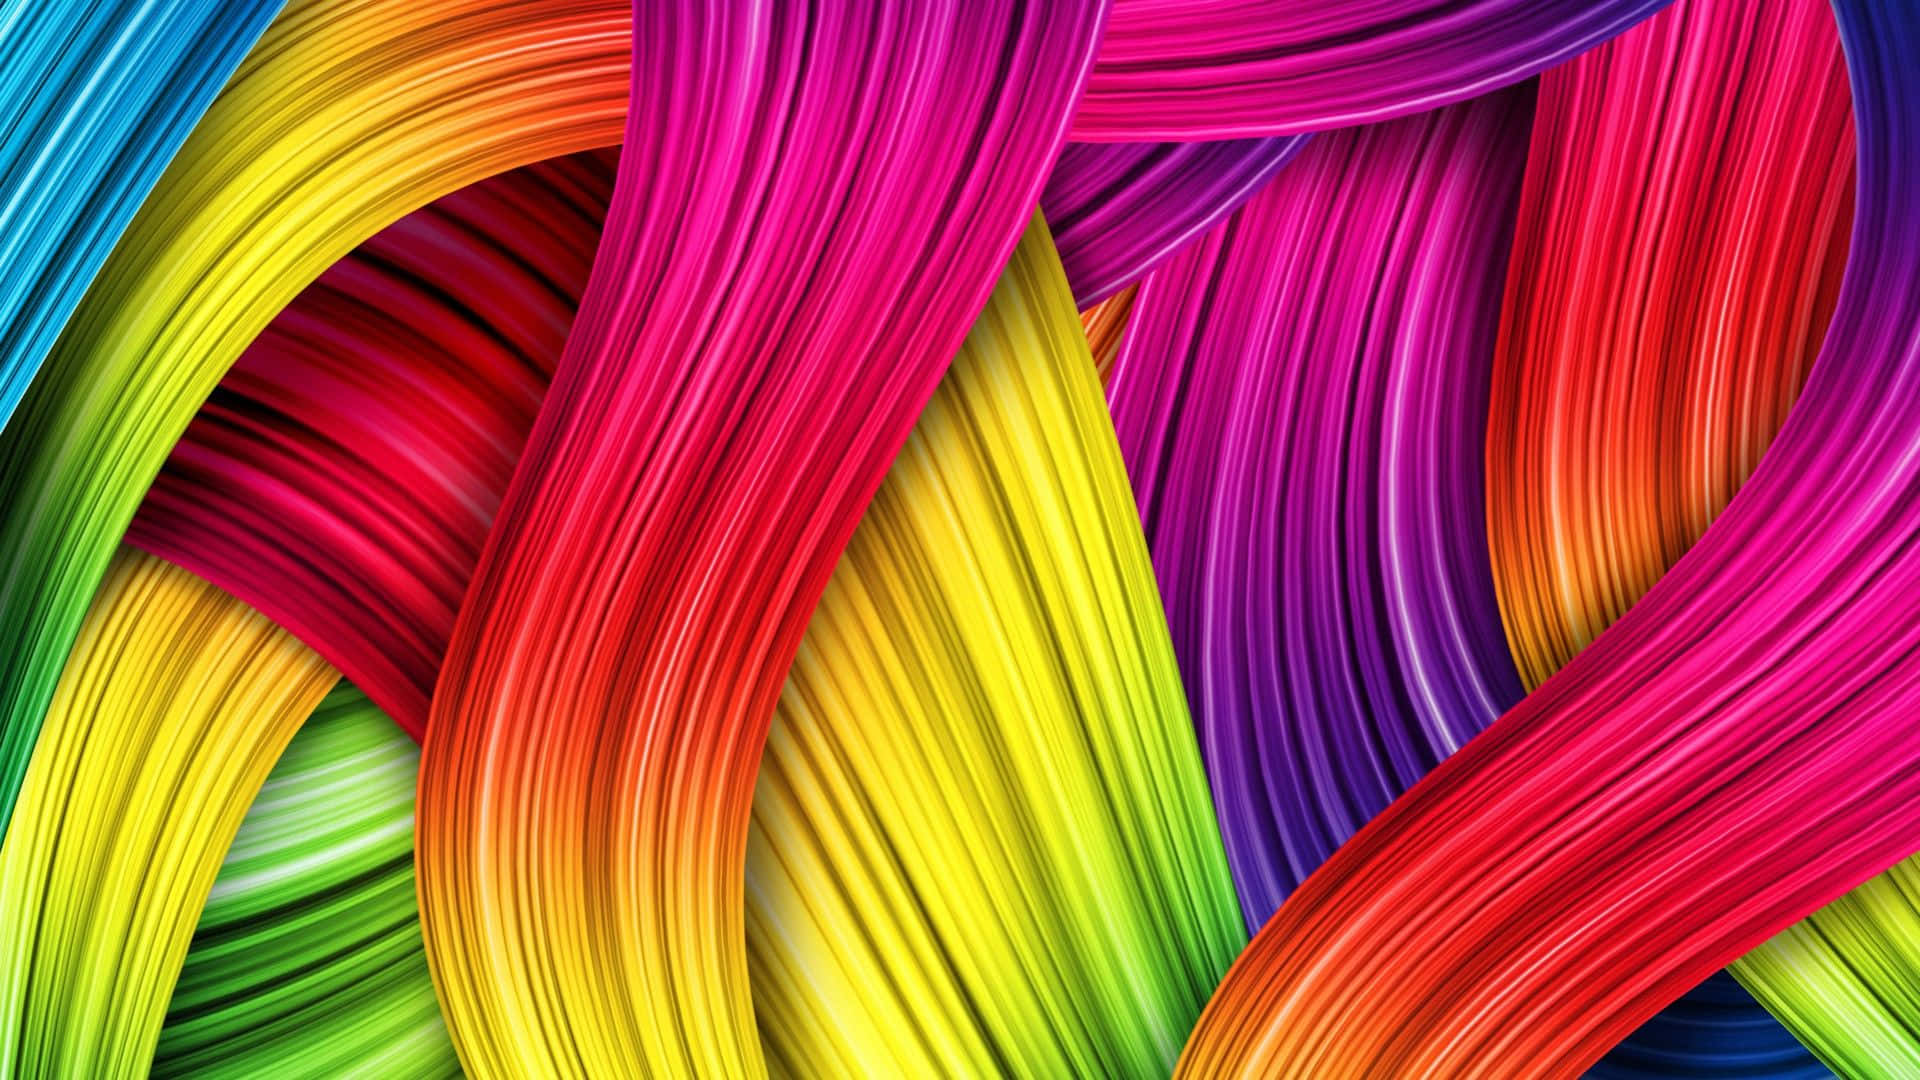 Immagini Di Colori Dell'arcobaleno